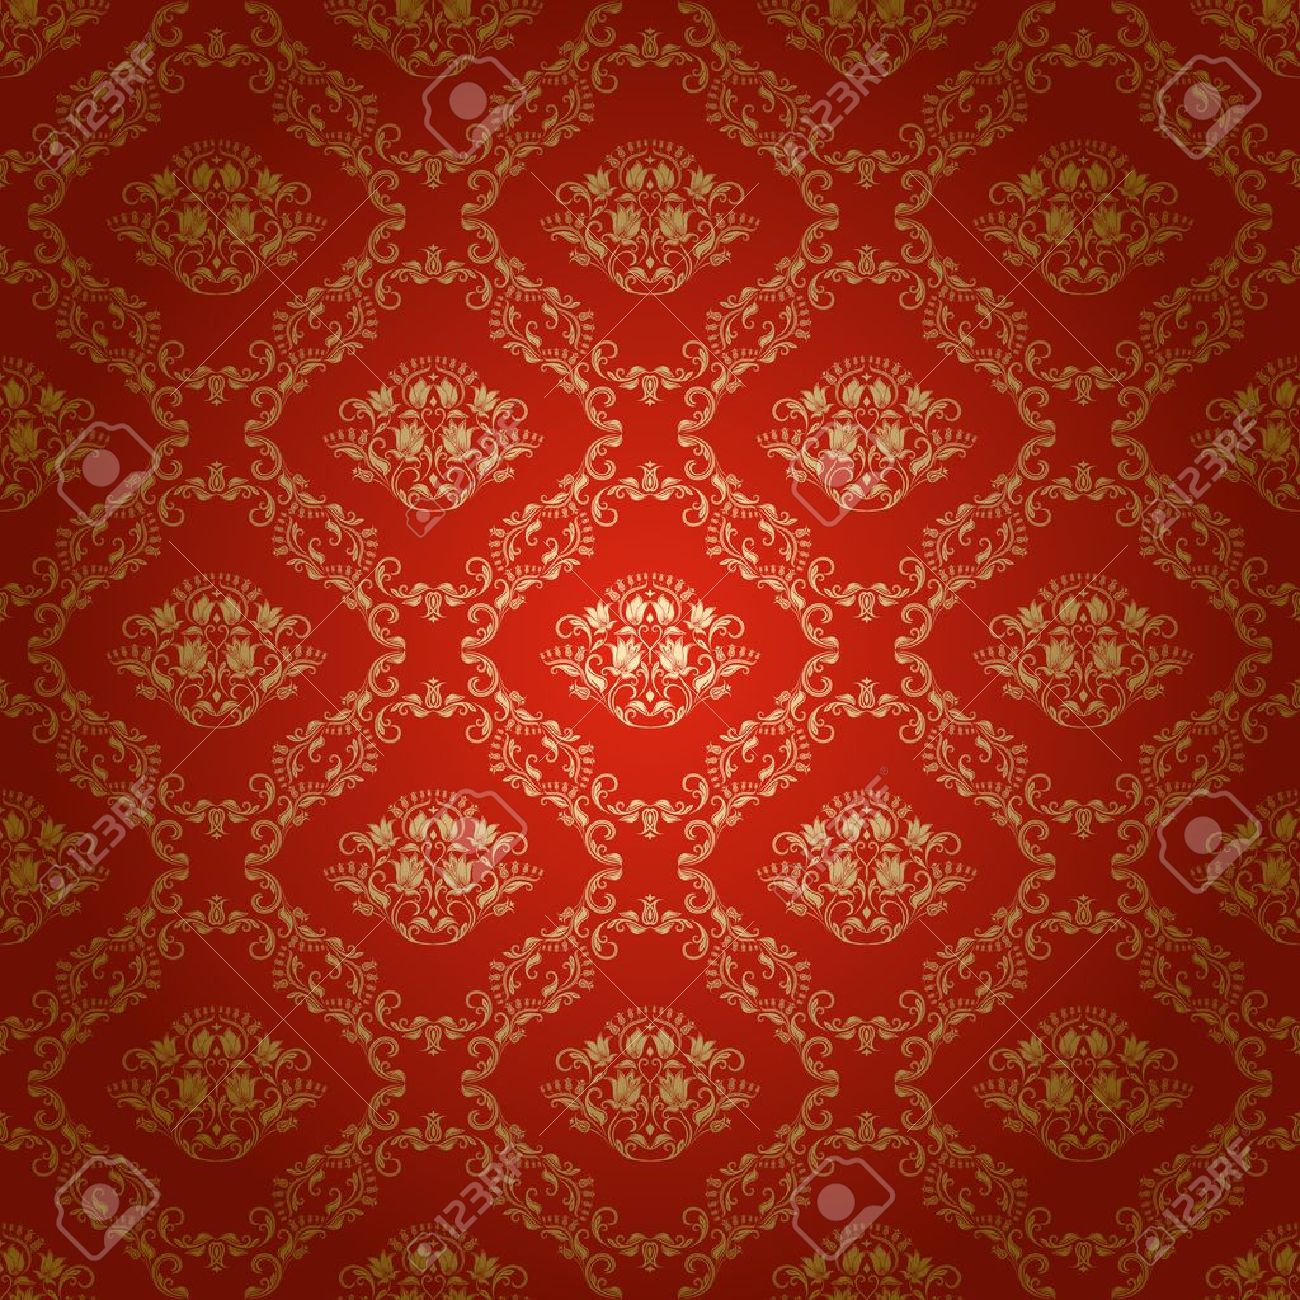 königliche tapete,muster,orange,rot,braun,design